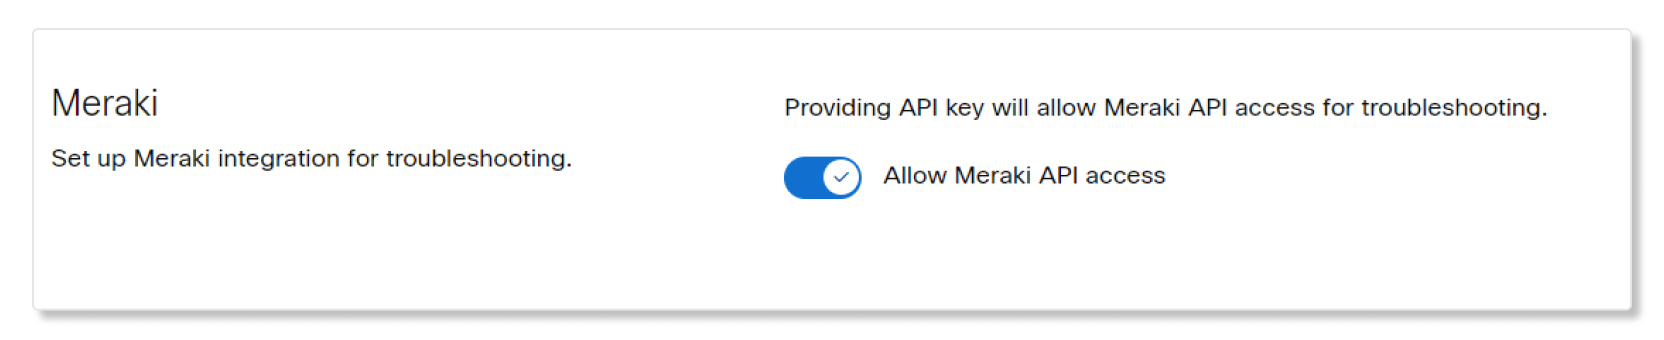 Autoriser l’accès à l’API Meraki dans Control Hub